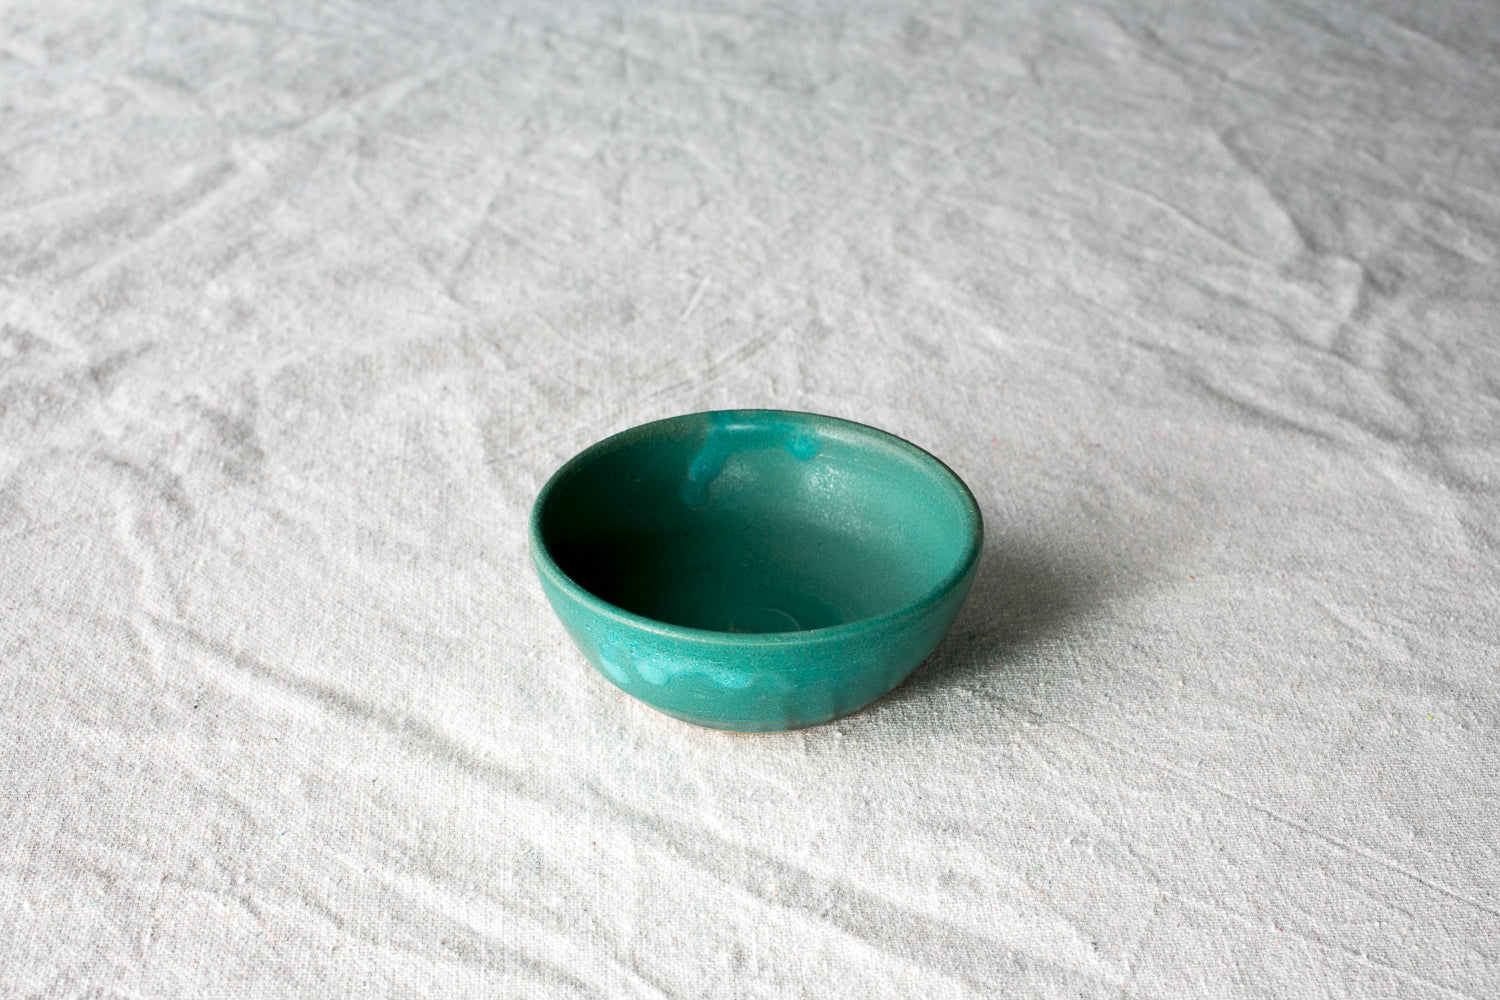 Buy Handmade Ceramic Pinch Bowl Online On Zwende